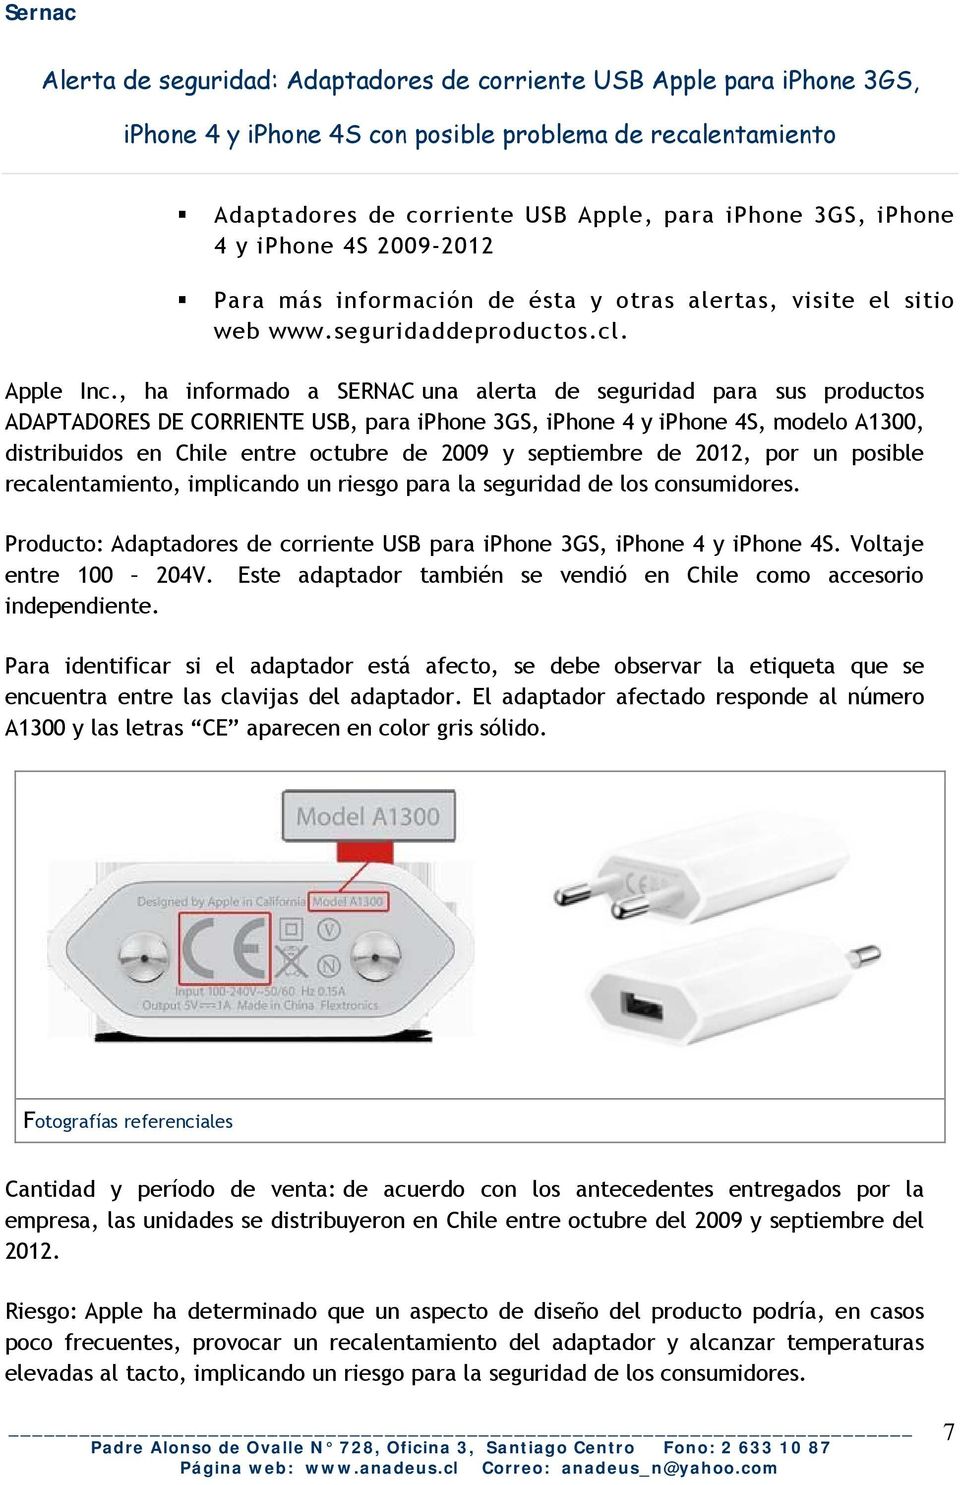 , ha informado a SERNAC una alerta de seguridad para sus productos ADAPTADORES DE CORRIENTE USB, para iphone 3GS, iphone 4 y iphone 4S, modelo A1300, distribuidos en Chile entre octubre de 2009 y